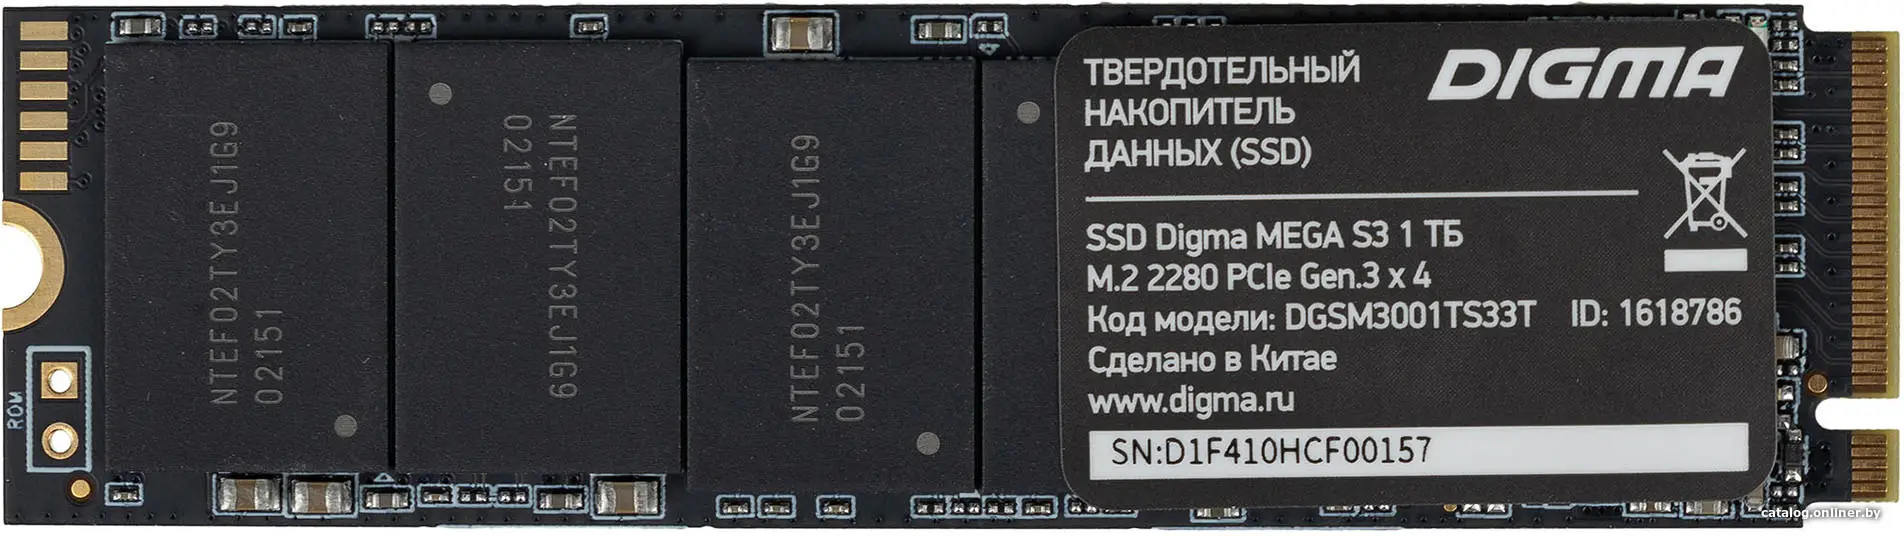 Купить Накопитель SSD M.2 2280 1Tb Digma Mega S3 DGSM3001TS33T, цена, опт и розница